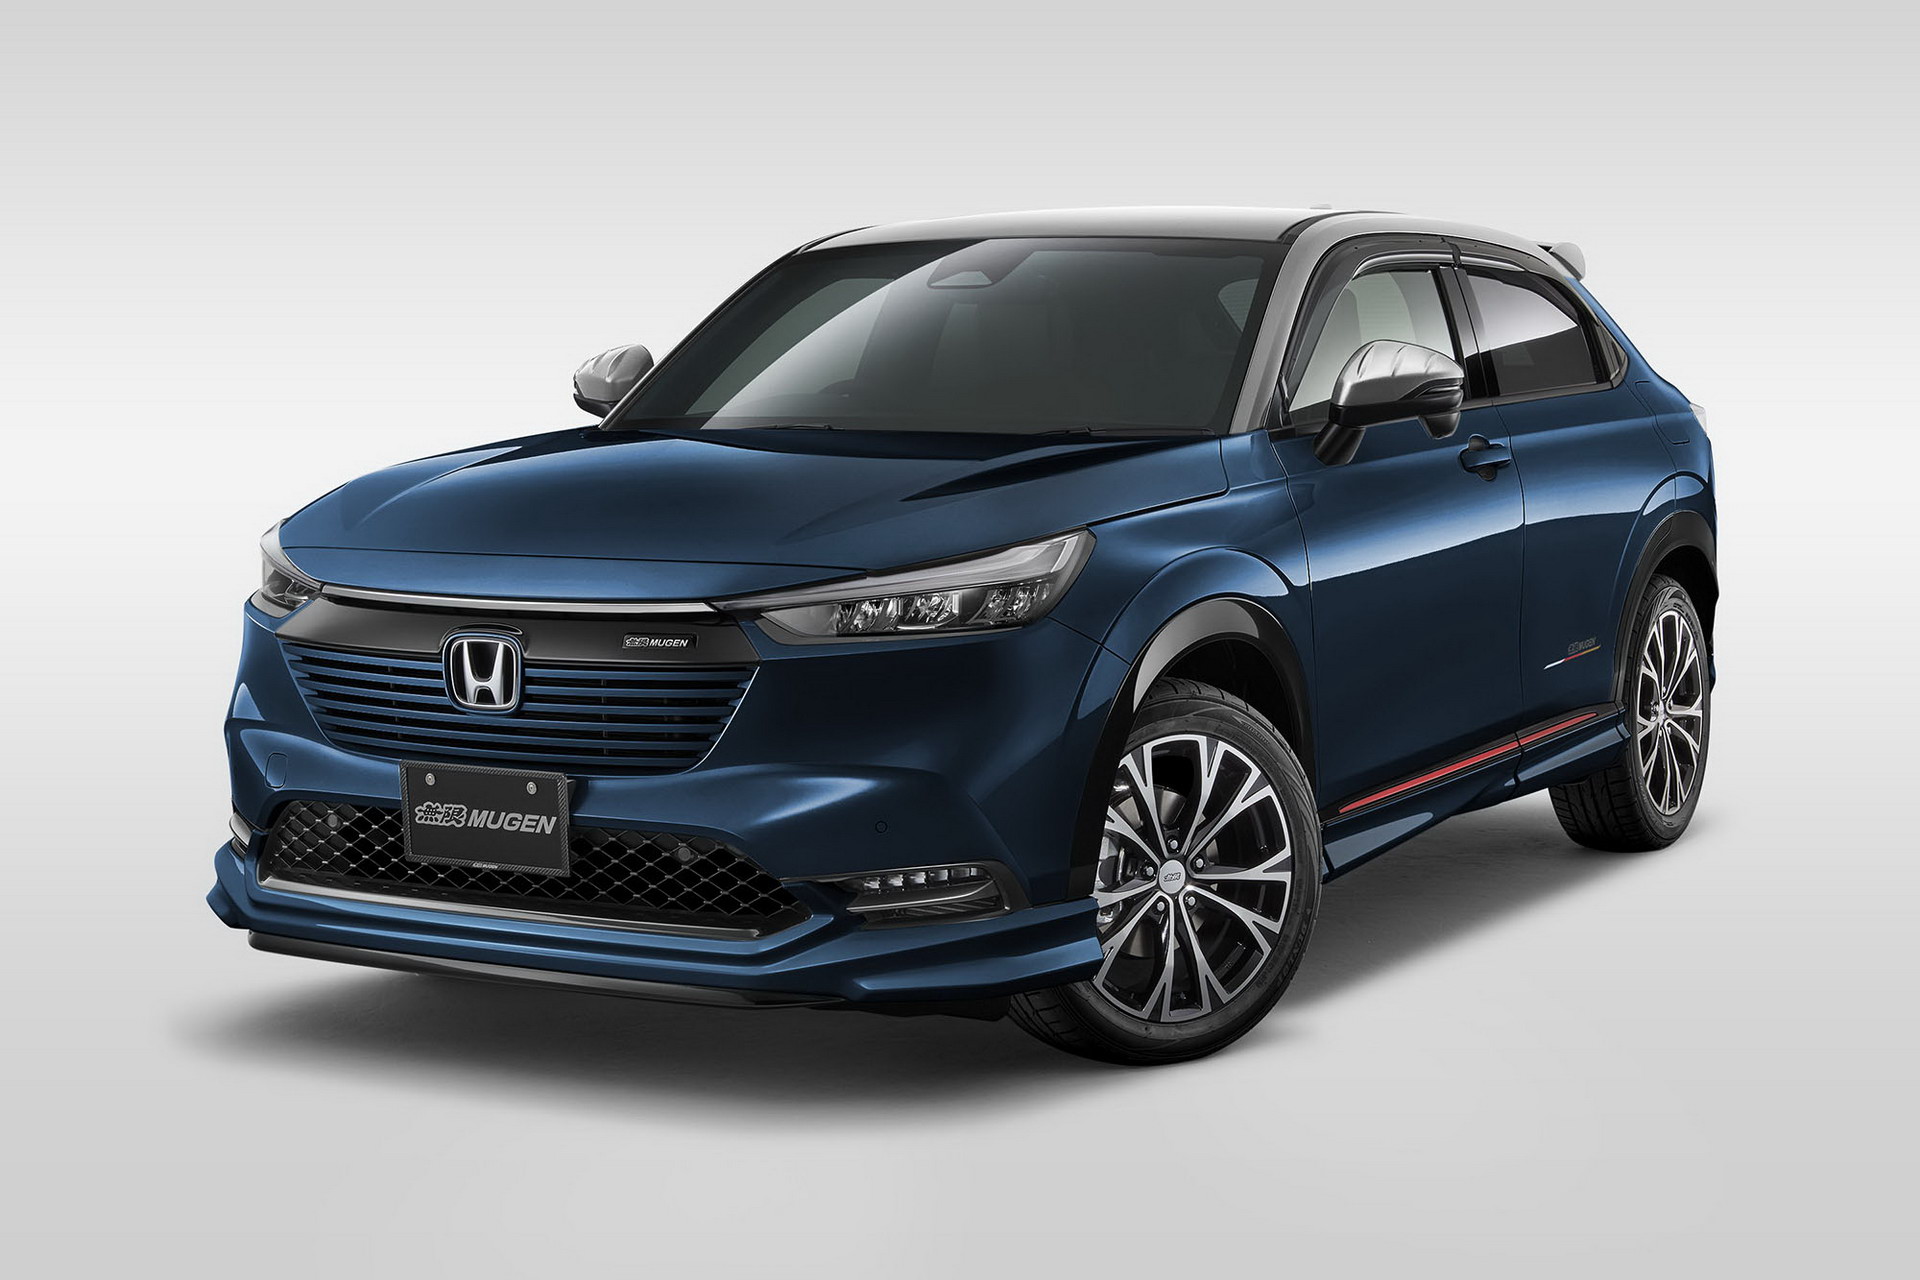 Novo Honda HRV esportivado é quase um facelift do SUV recémlançado